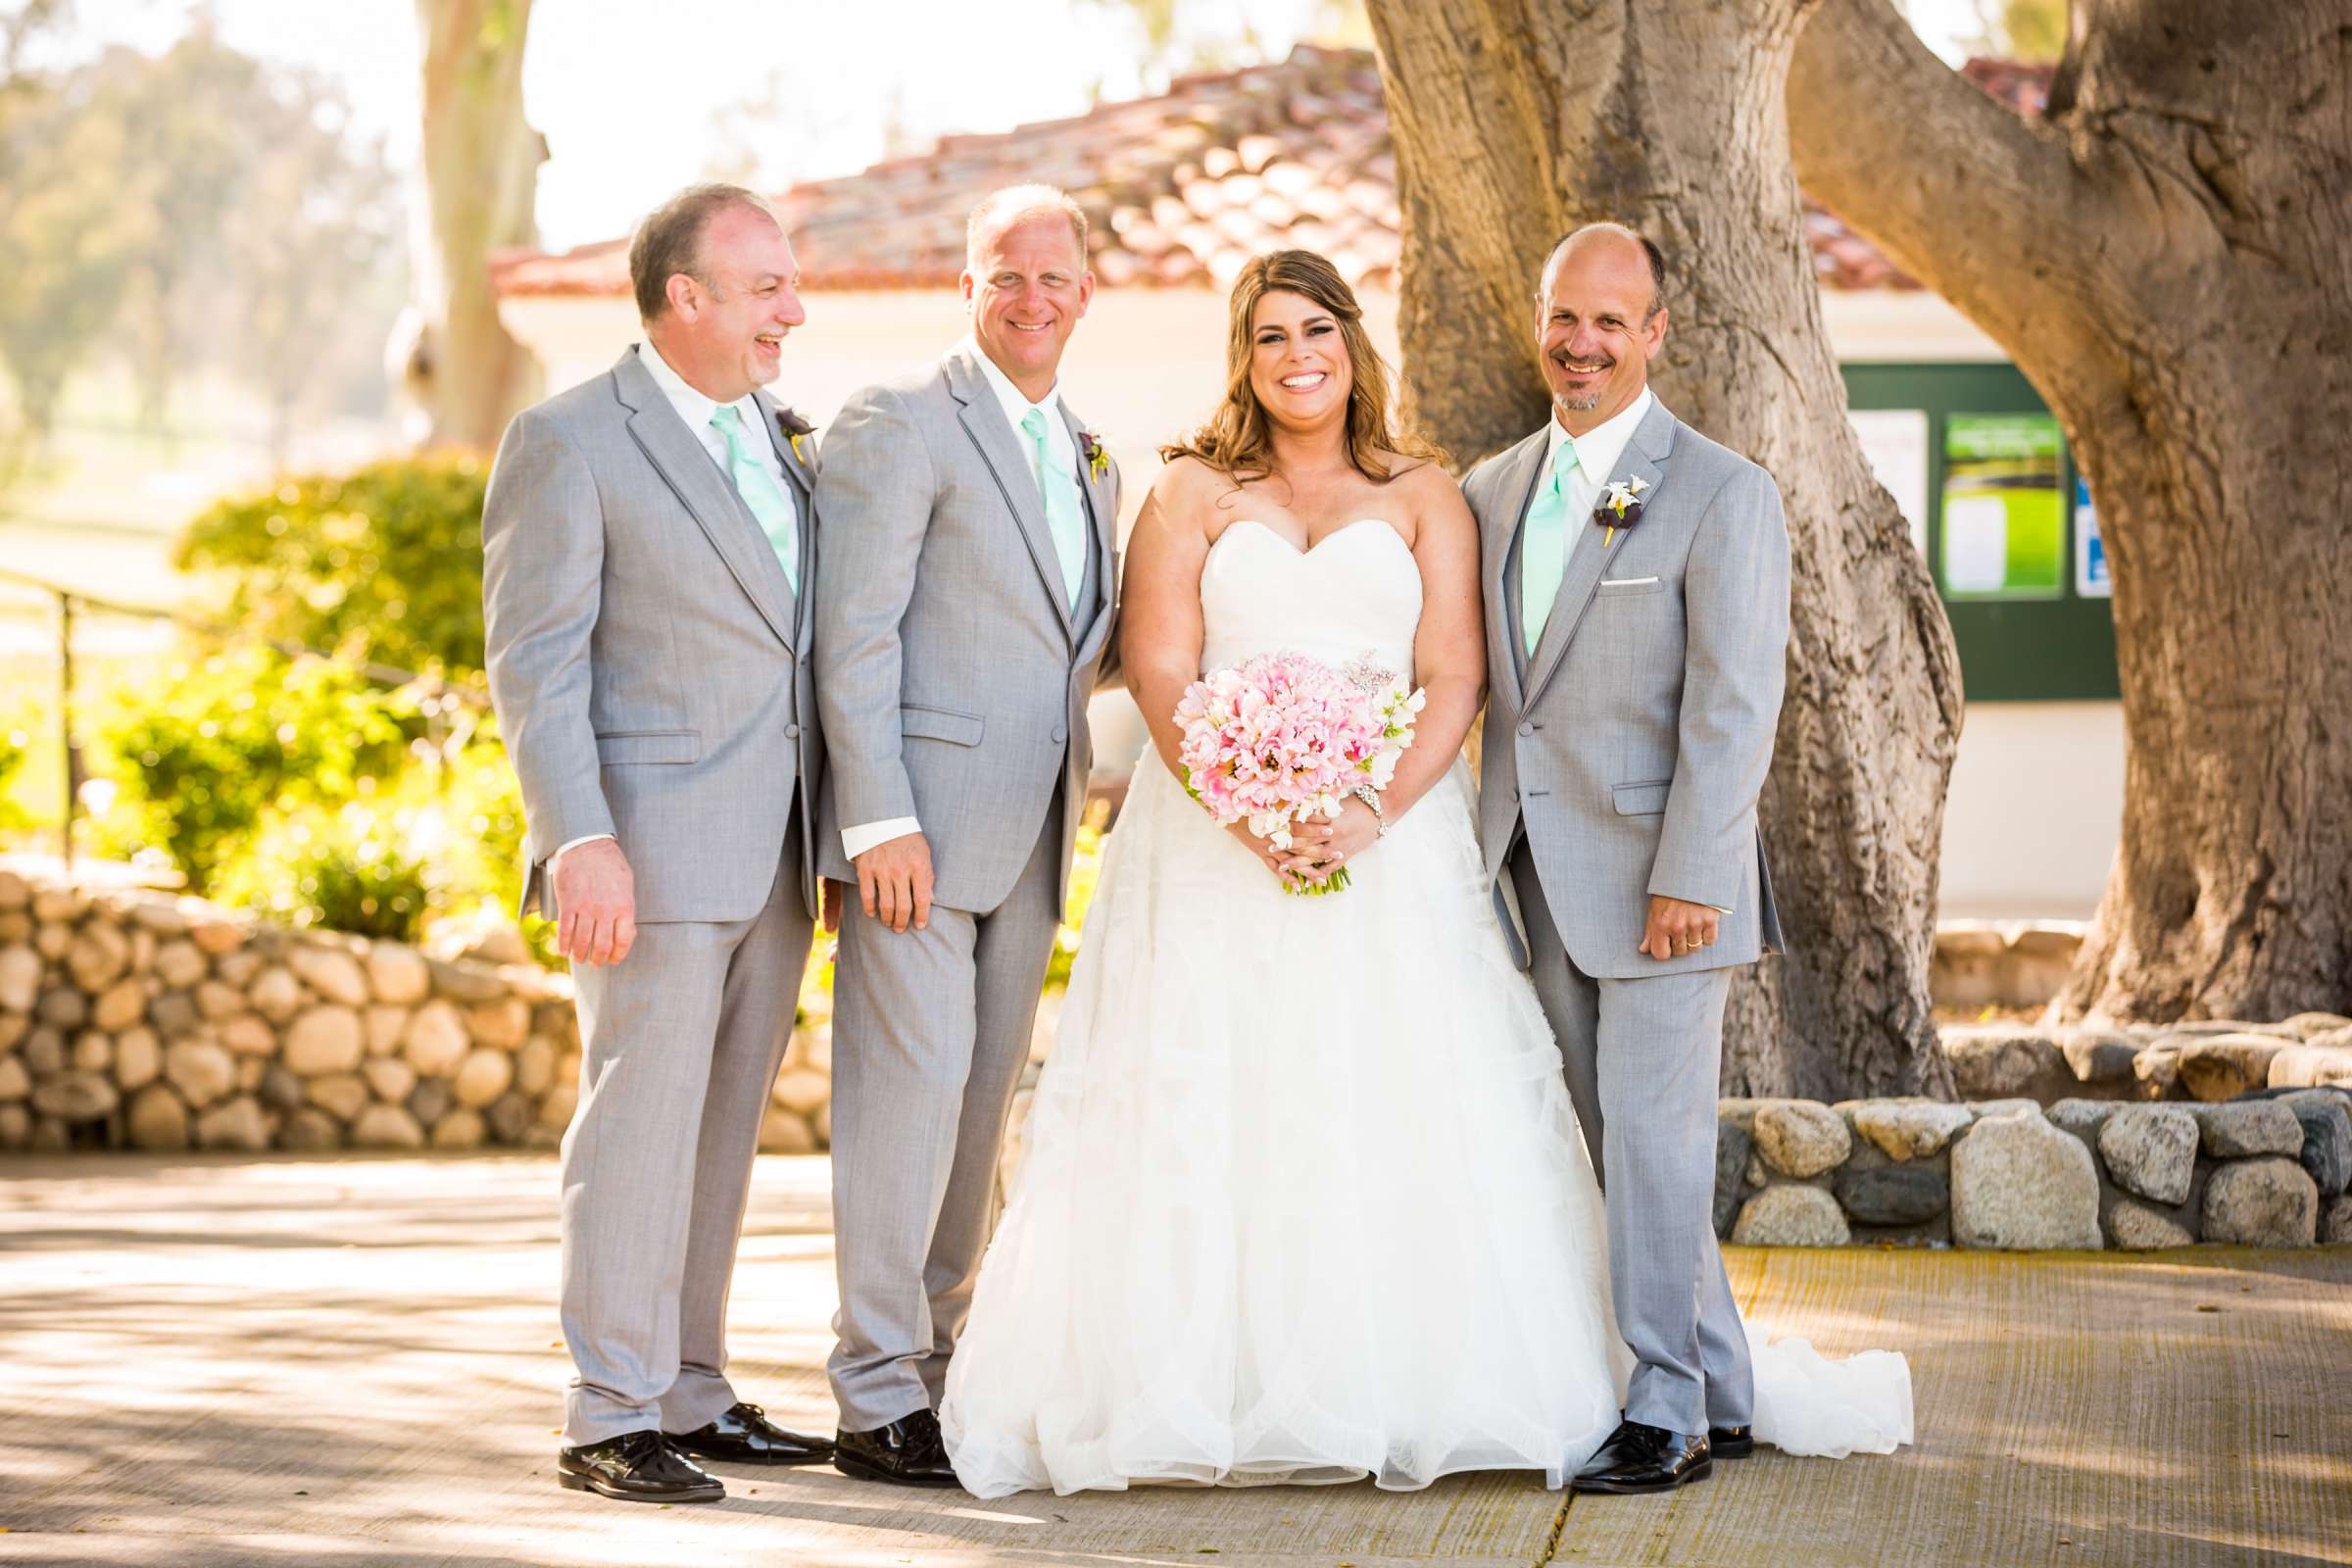 Rancho Santa Fe Golf Club Wedding coordinated by Monarch Weddings, Carolynn and Jon Wedding Photo #55 by True Photography